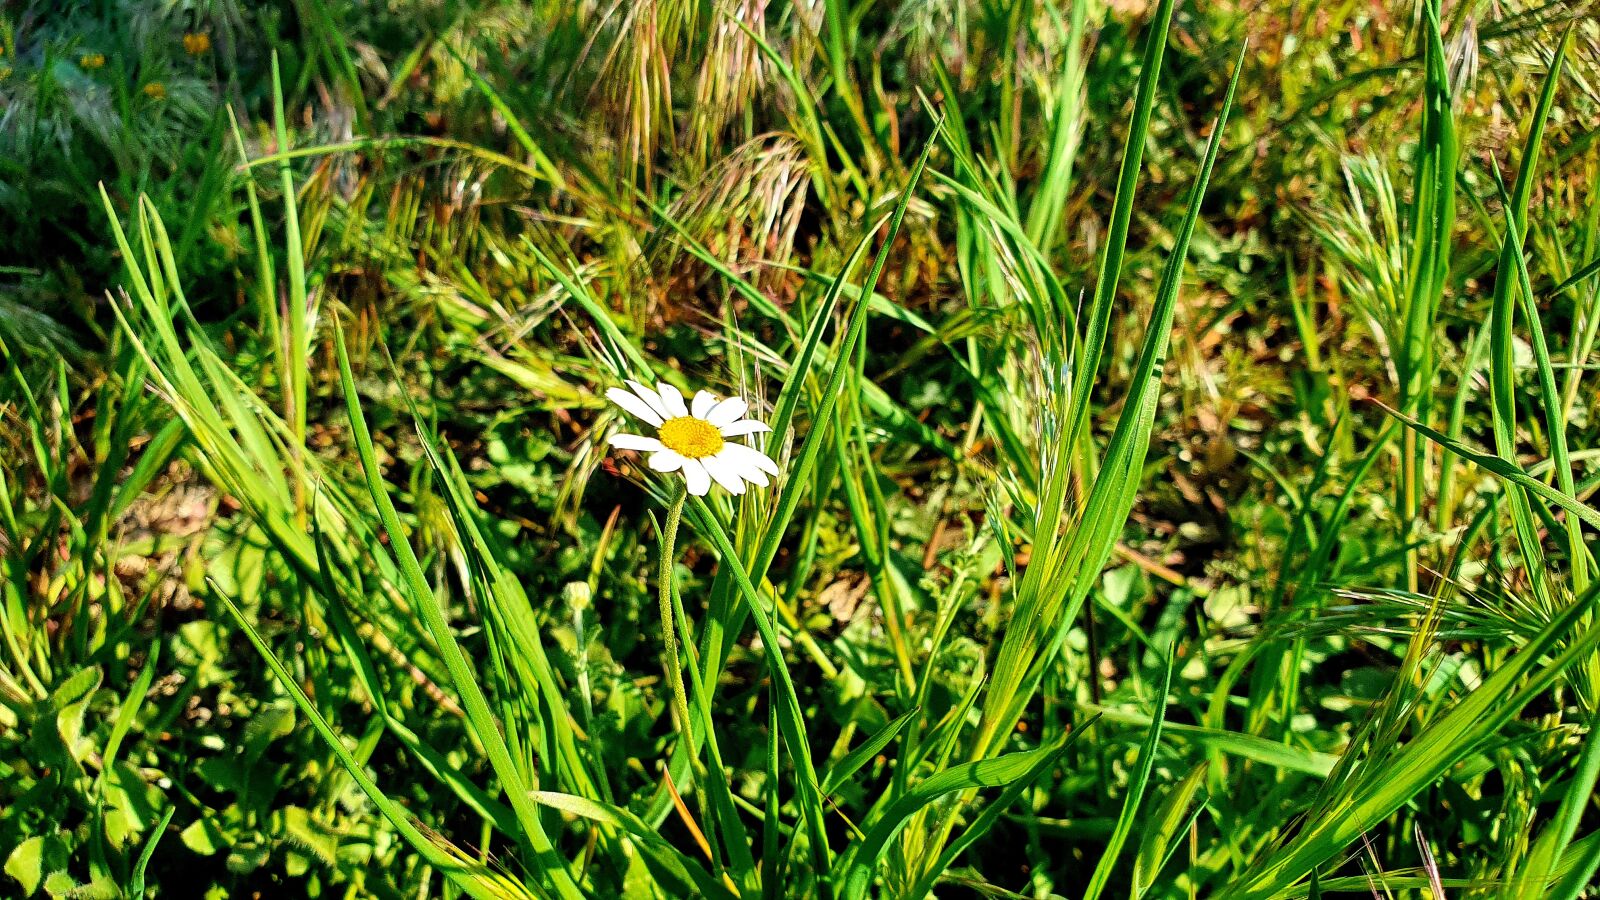 Samsung Galaxy S10e sample photo. Daisy, grass, garden photography